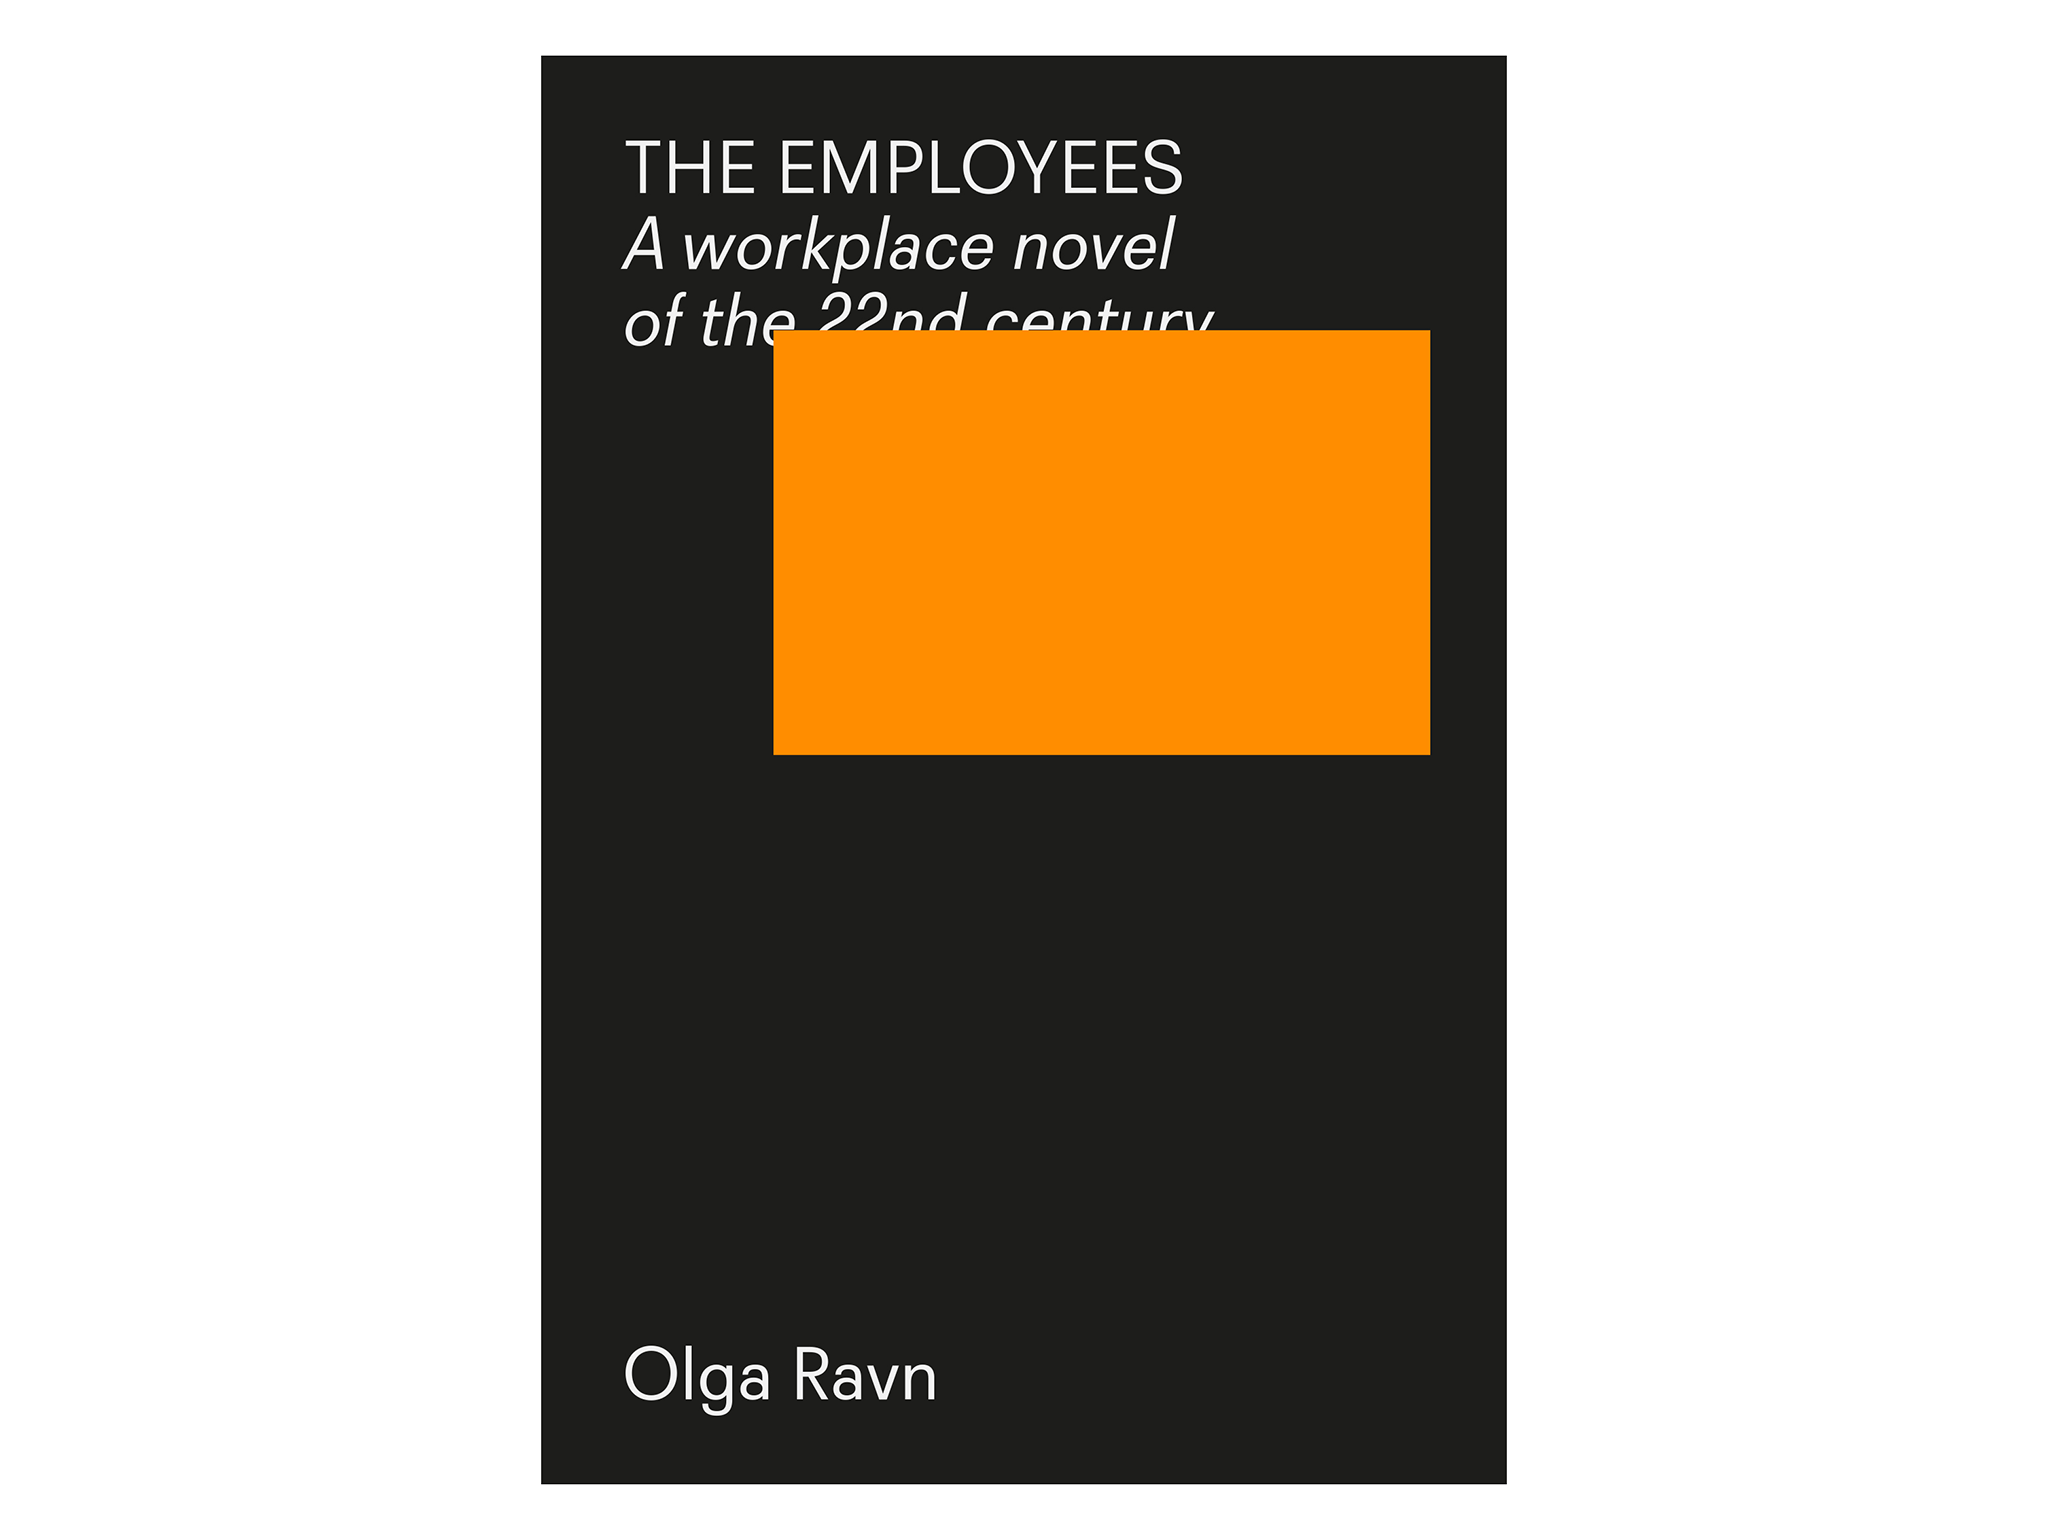 Olga Ravn - The Employees Book Jacket-indybest-international-booker-prize-shortlist.png